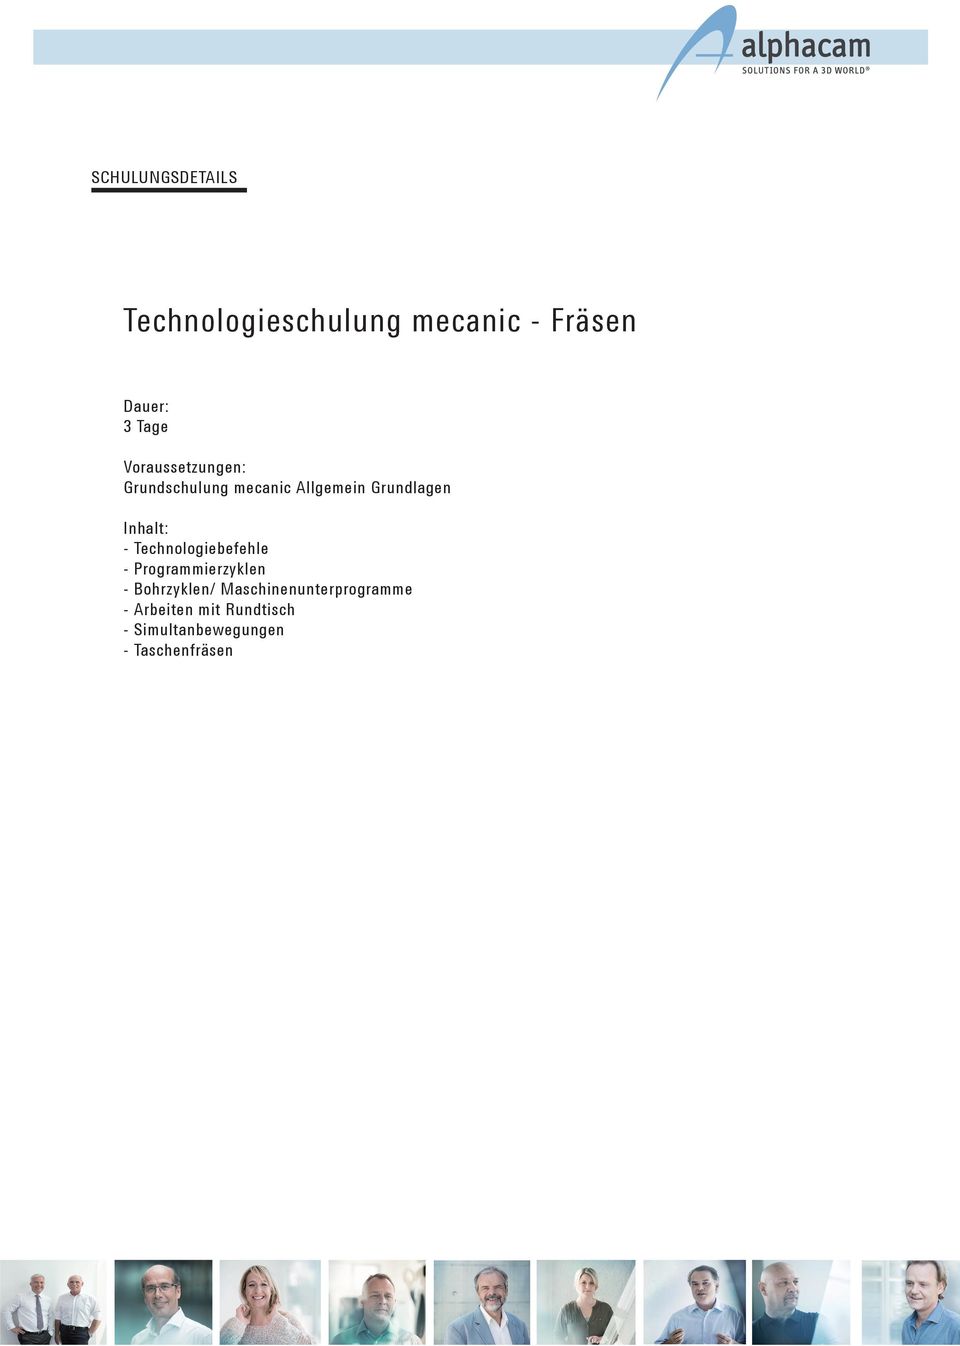 Technologiebefehle - Programmierzyklen - Bohrzyklen/